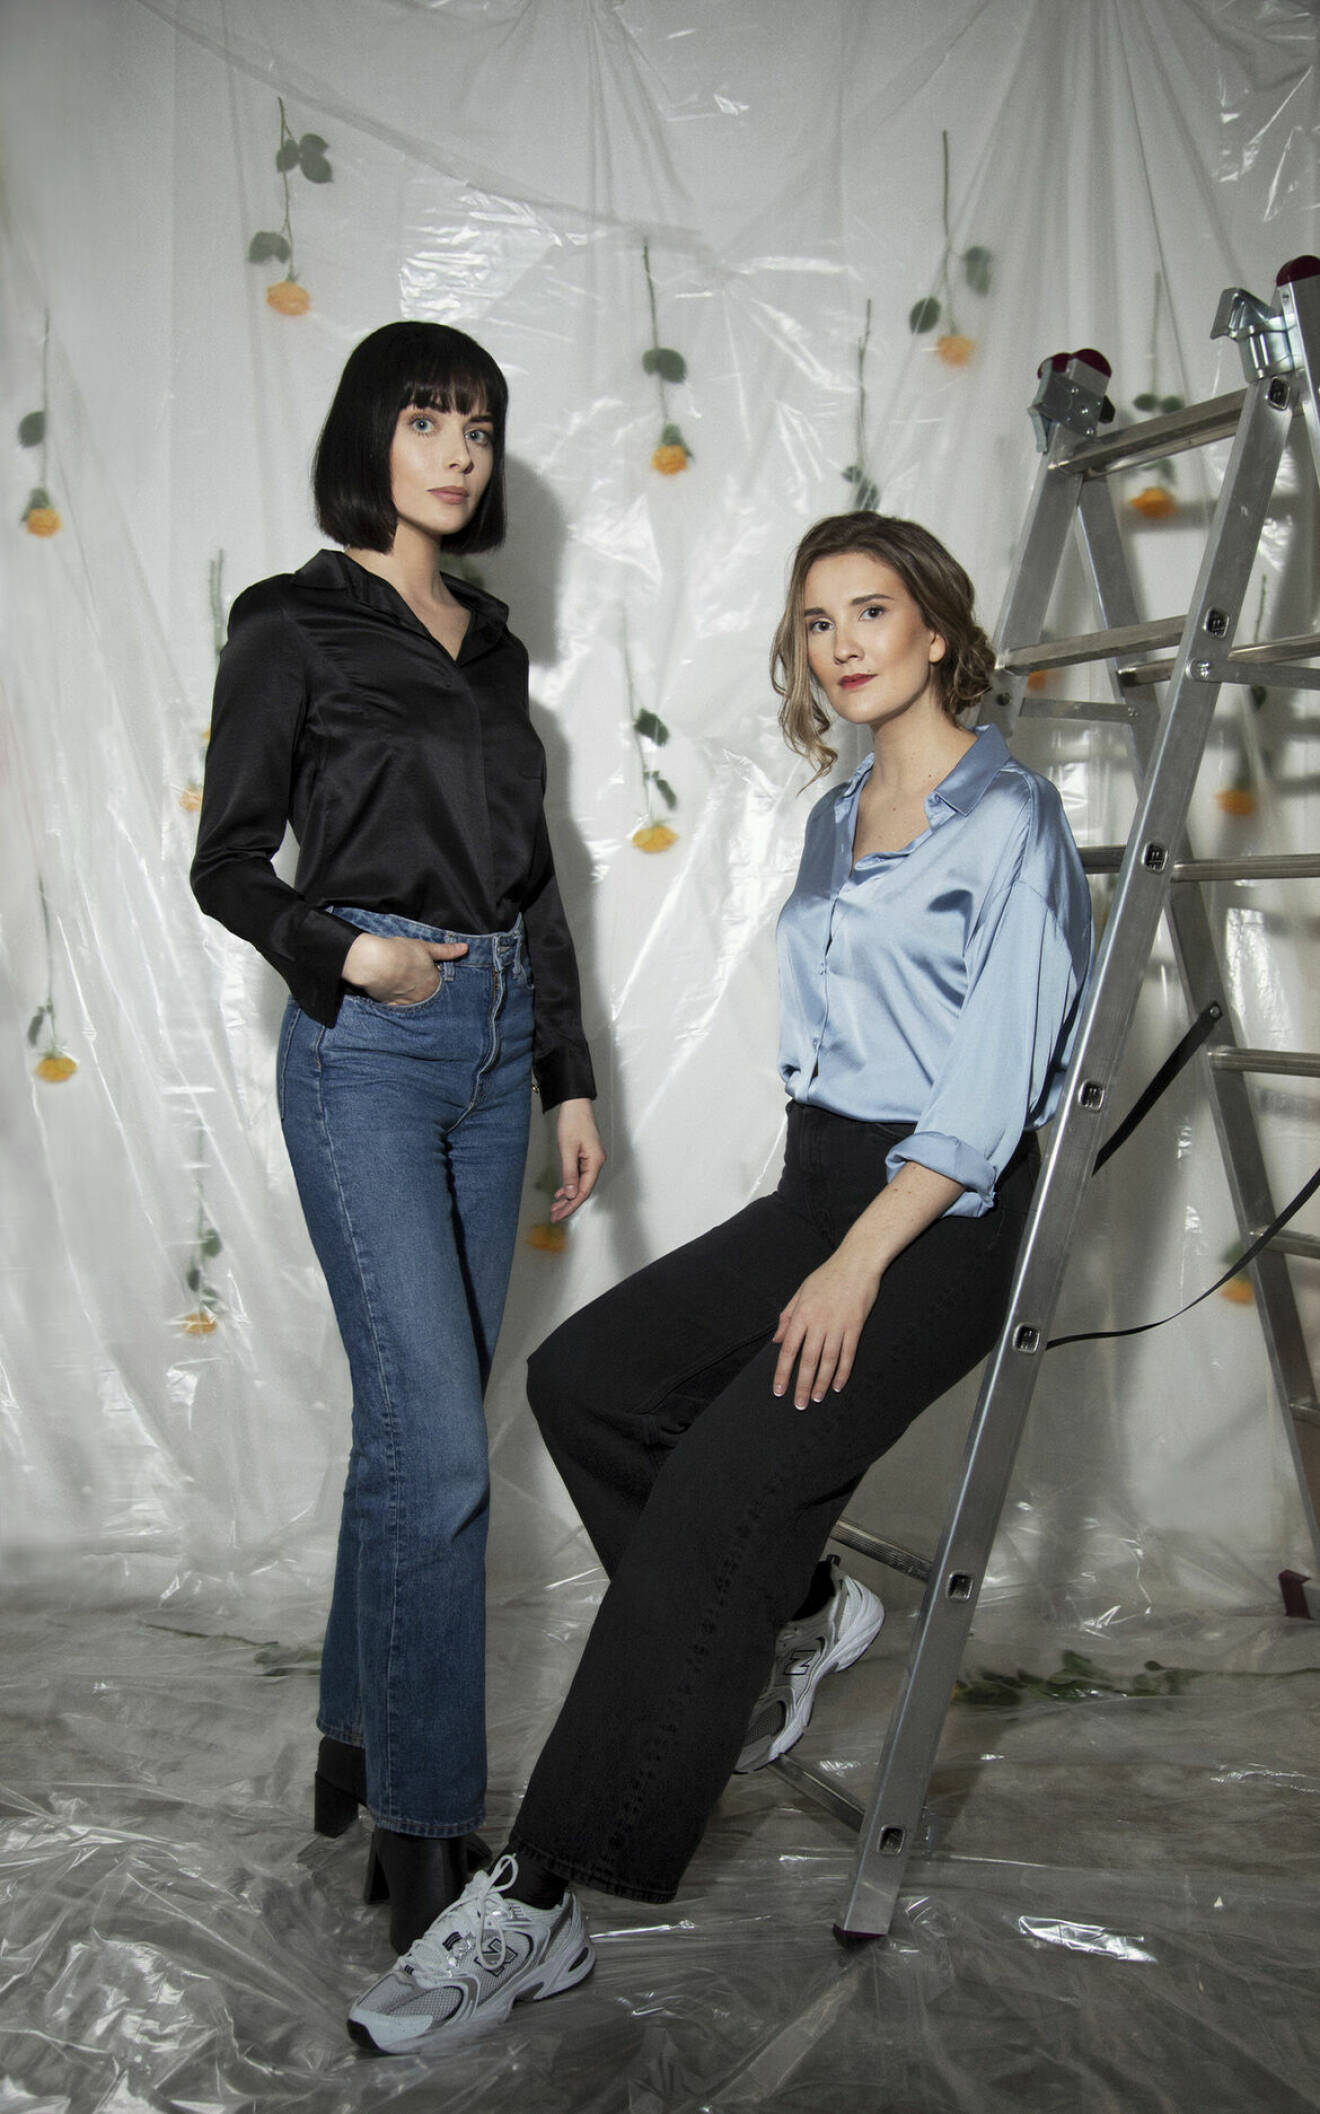 Arkitektduon Polina Sandström och Madeleine Klingspor träffades under sin studietid på Parsons i New York. Där föddes idén till Aska.